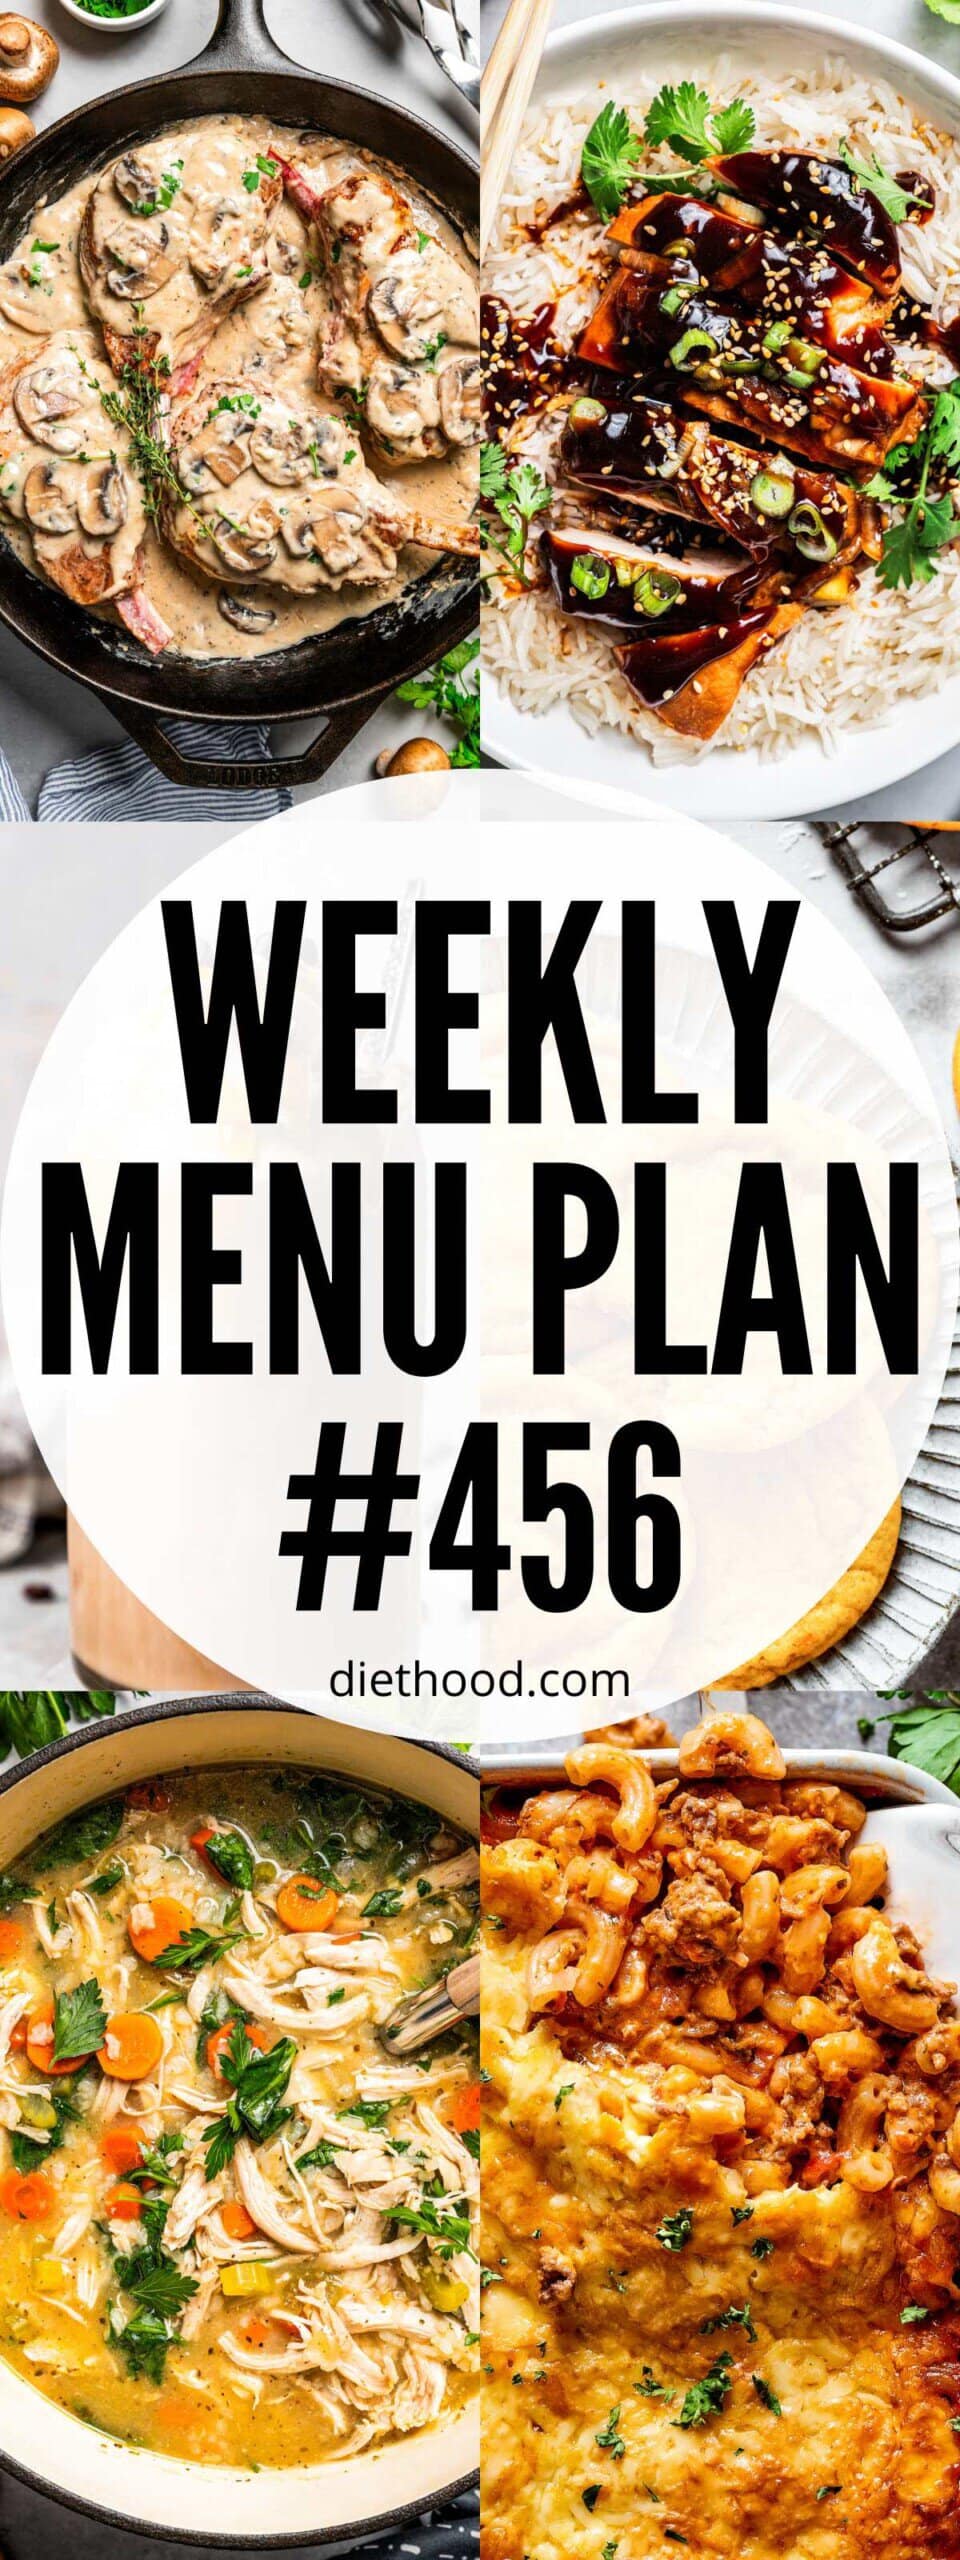 Weekly Menu Plan 456 six image collage Pinterest image.